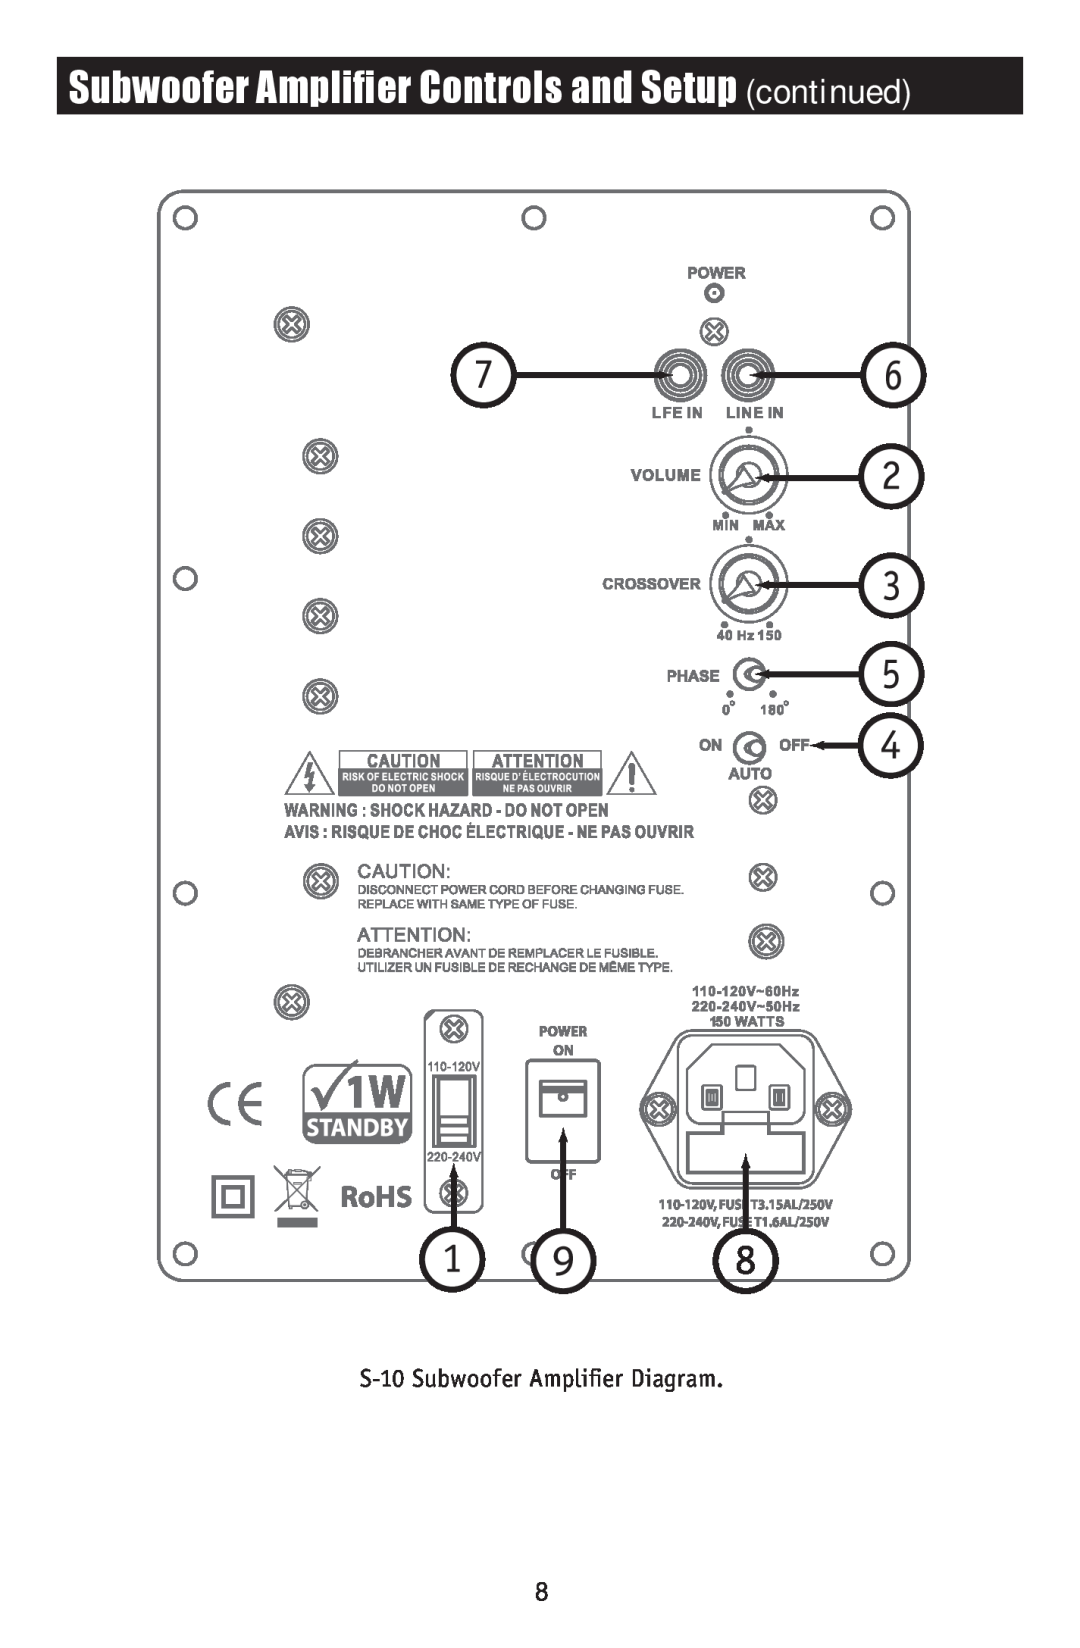 RBH Sound S-12 owner manual Subwoofer Amplifier Controls and Setup continued, S-10Subwoofer Amplifier Diagram 